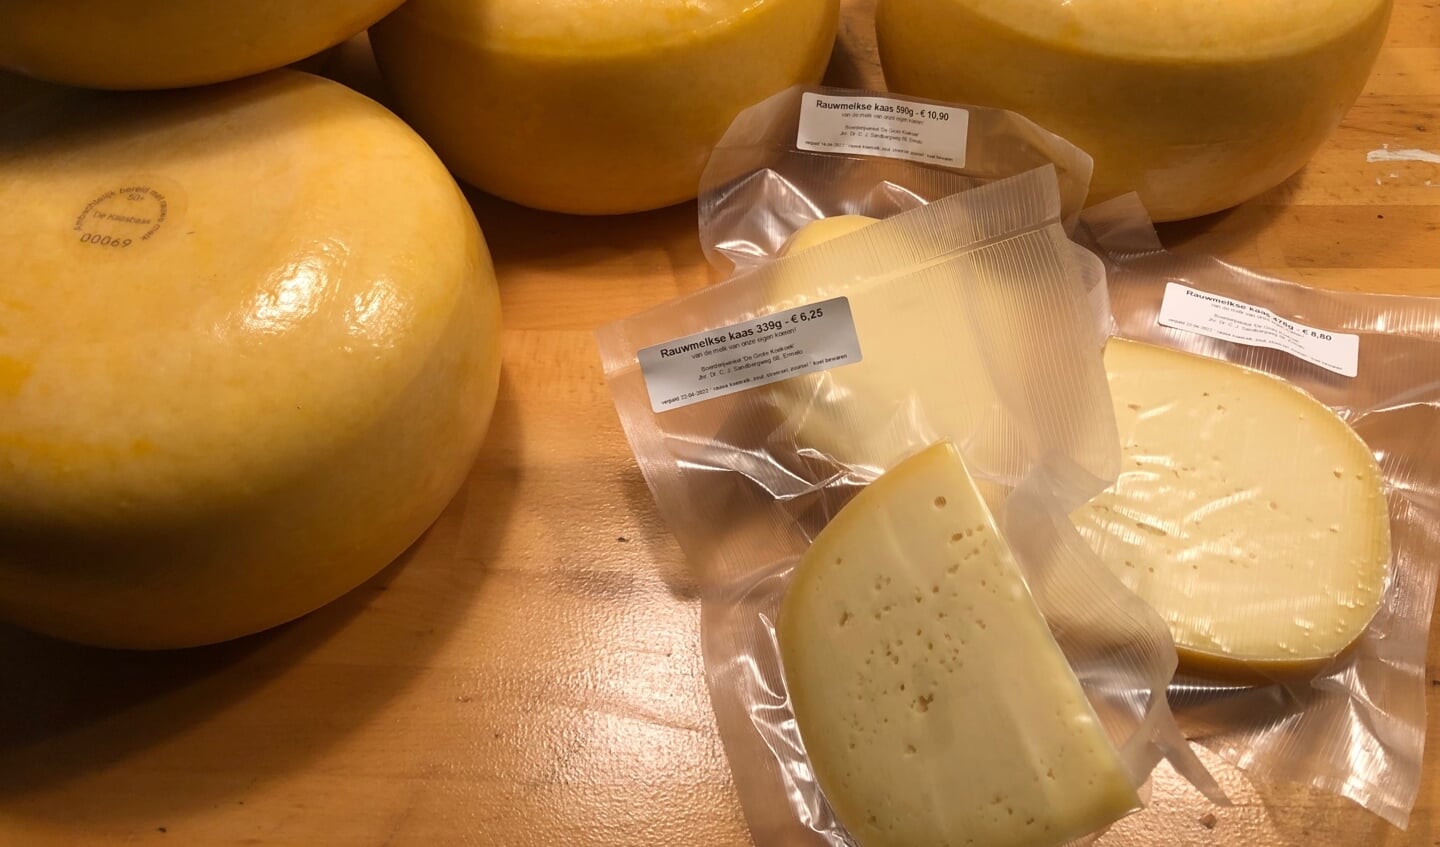 Rauwmelkse kaas van de boerderij